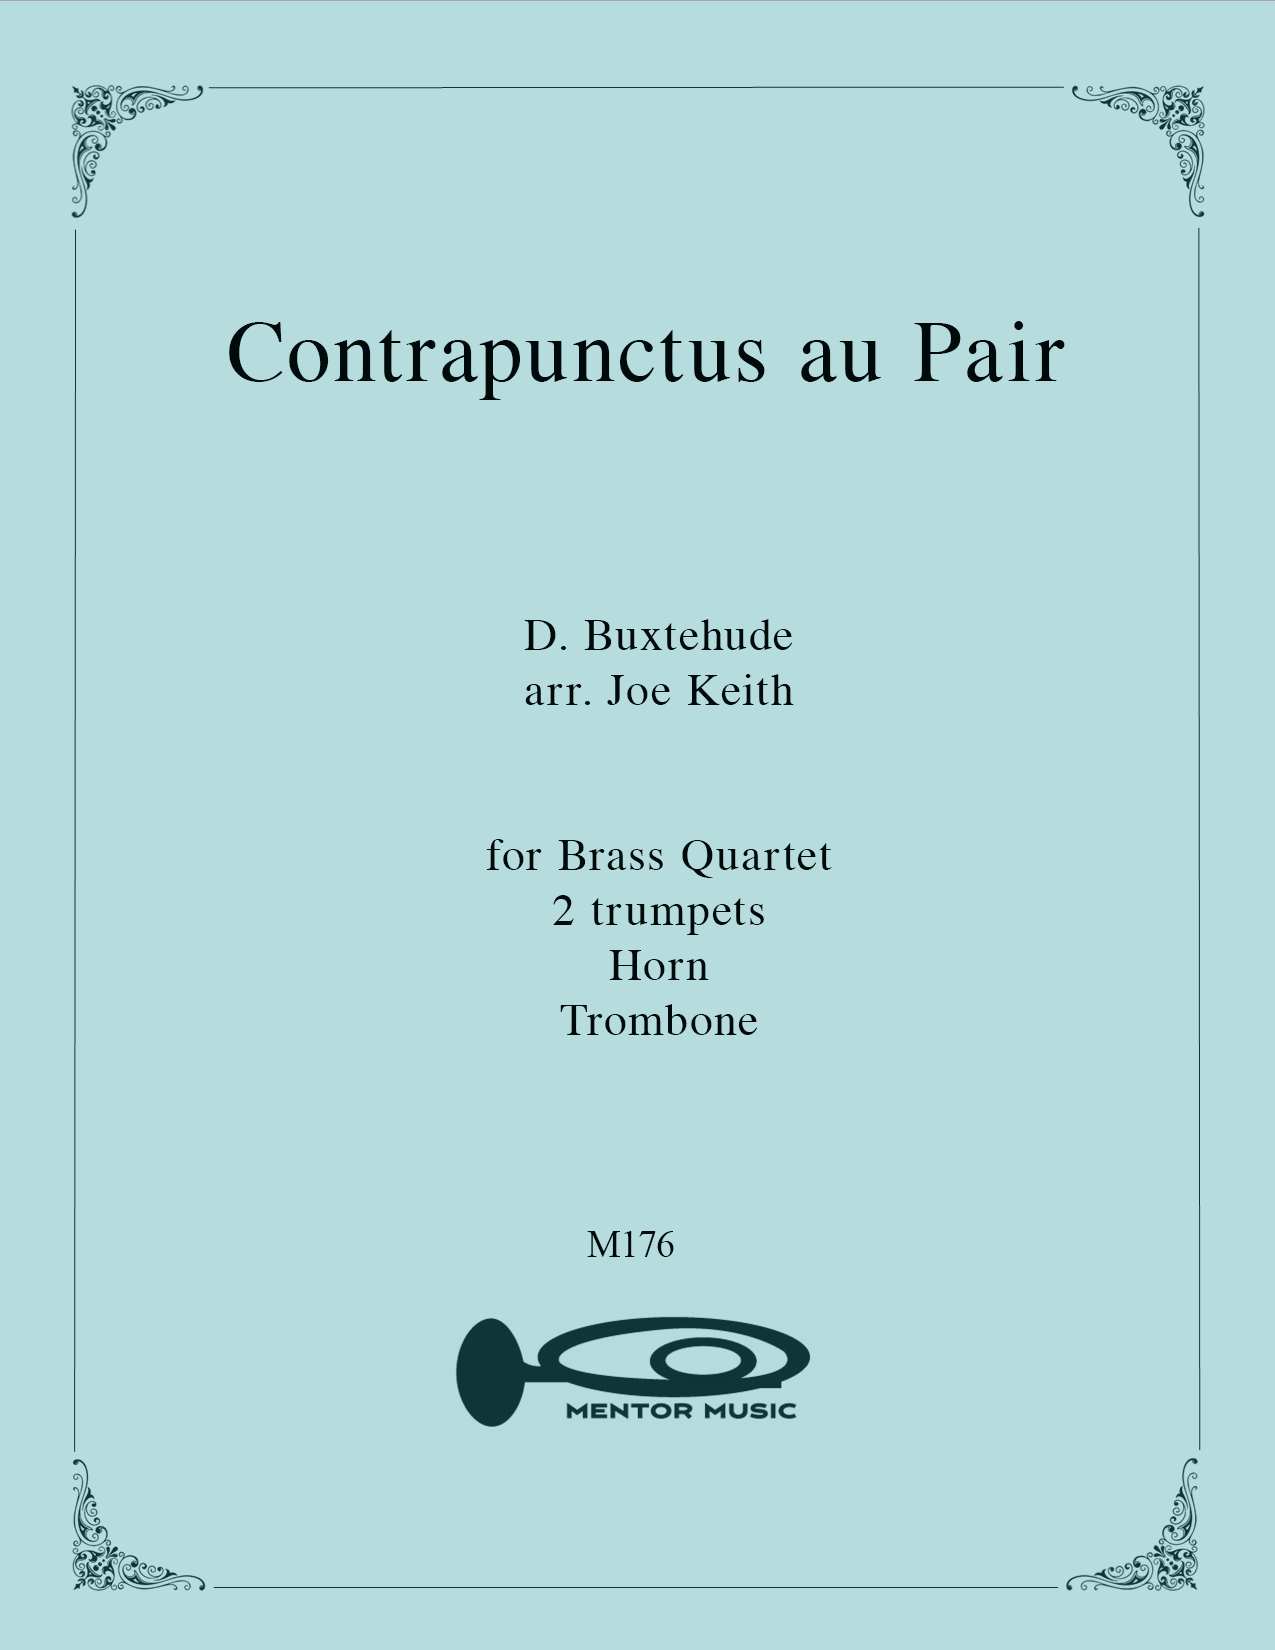 Contrapunctus au Pair for Brass Quartet